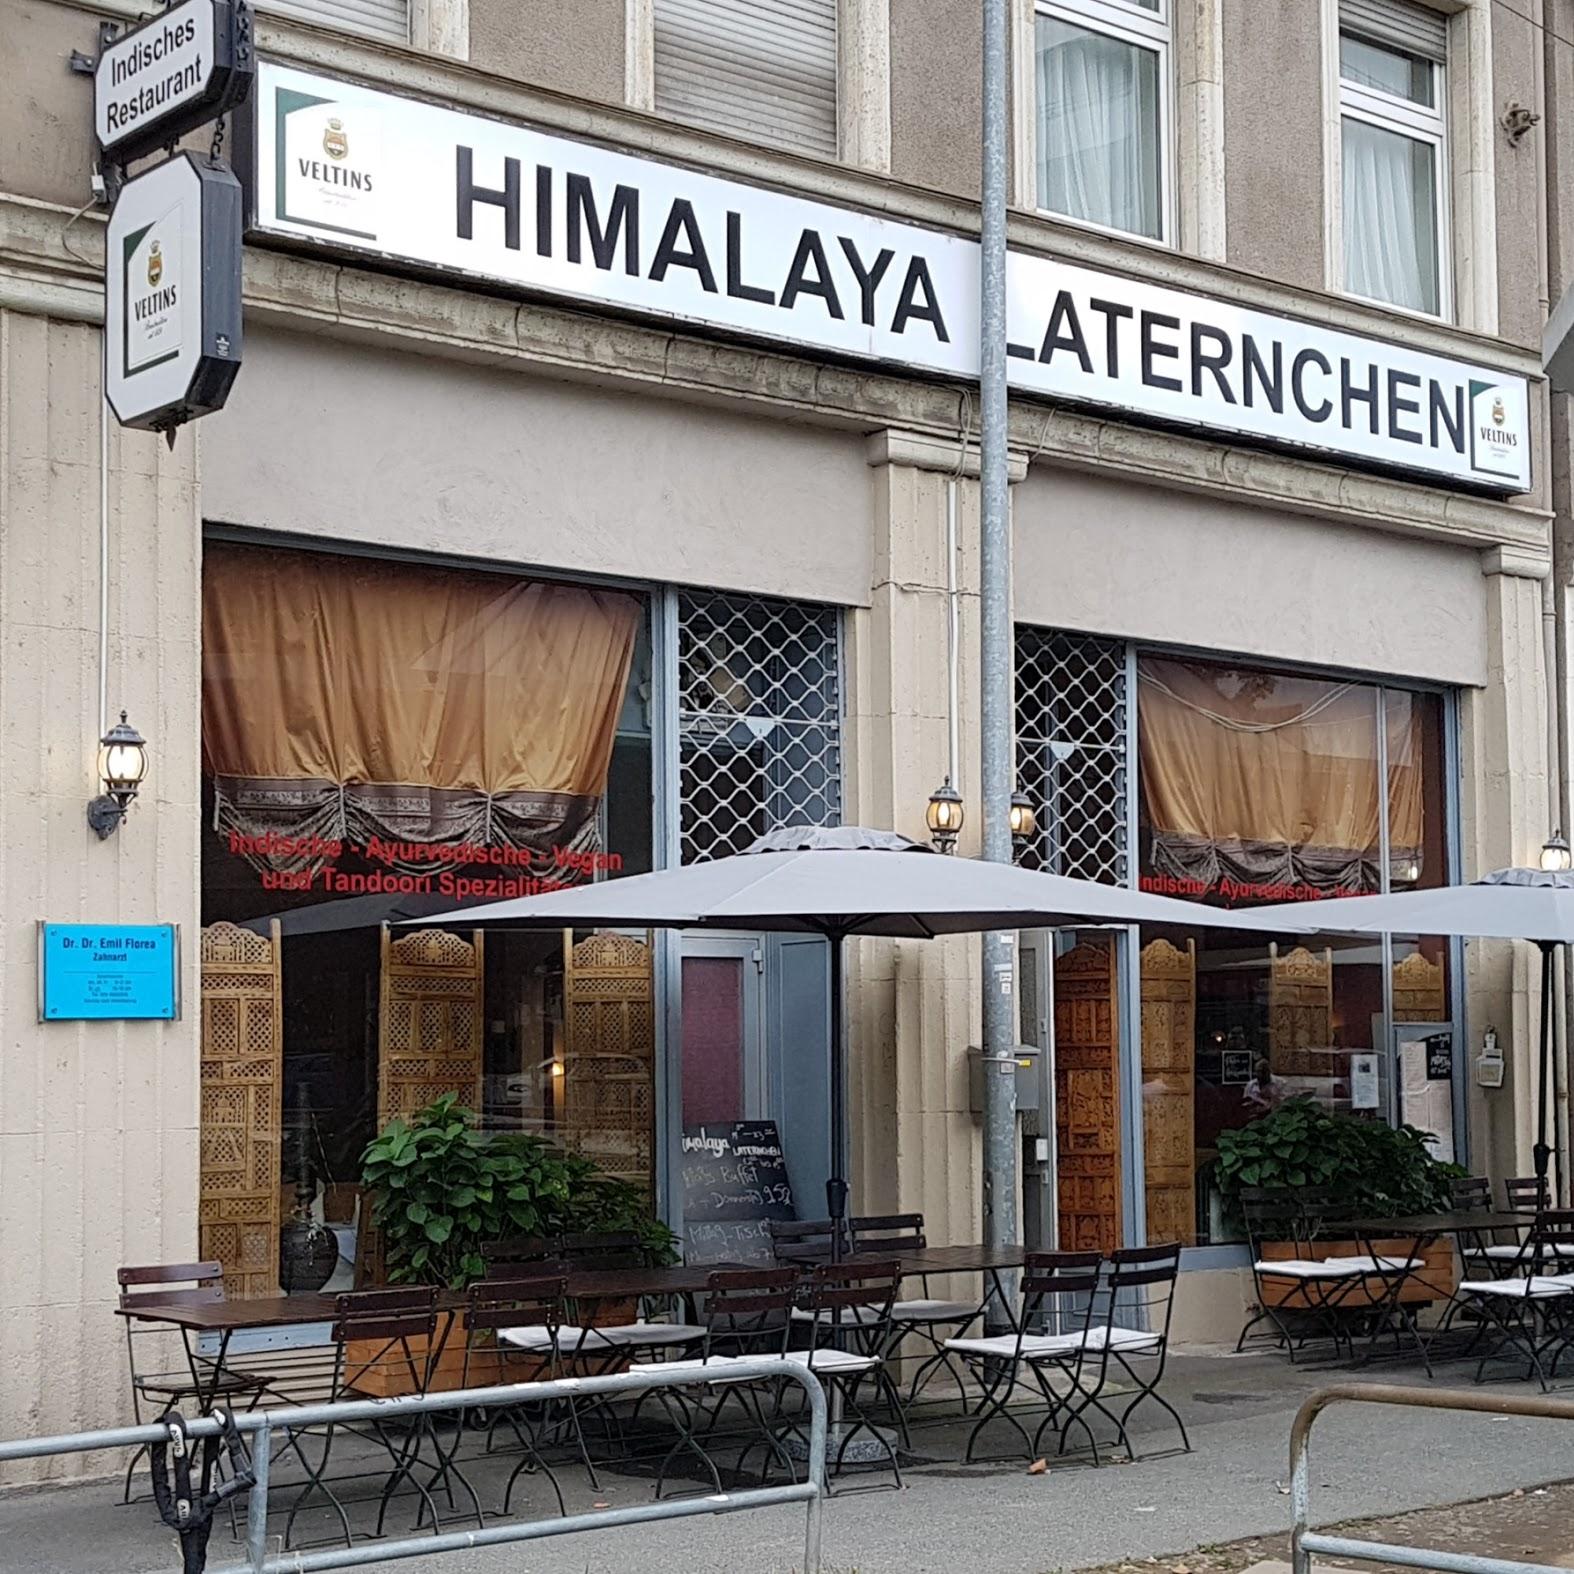 Restaurant "Himalaya -Laternchen" in Frankfurt am Main